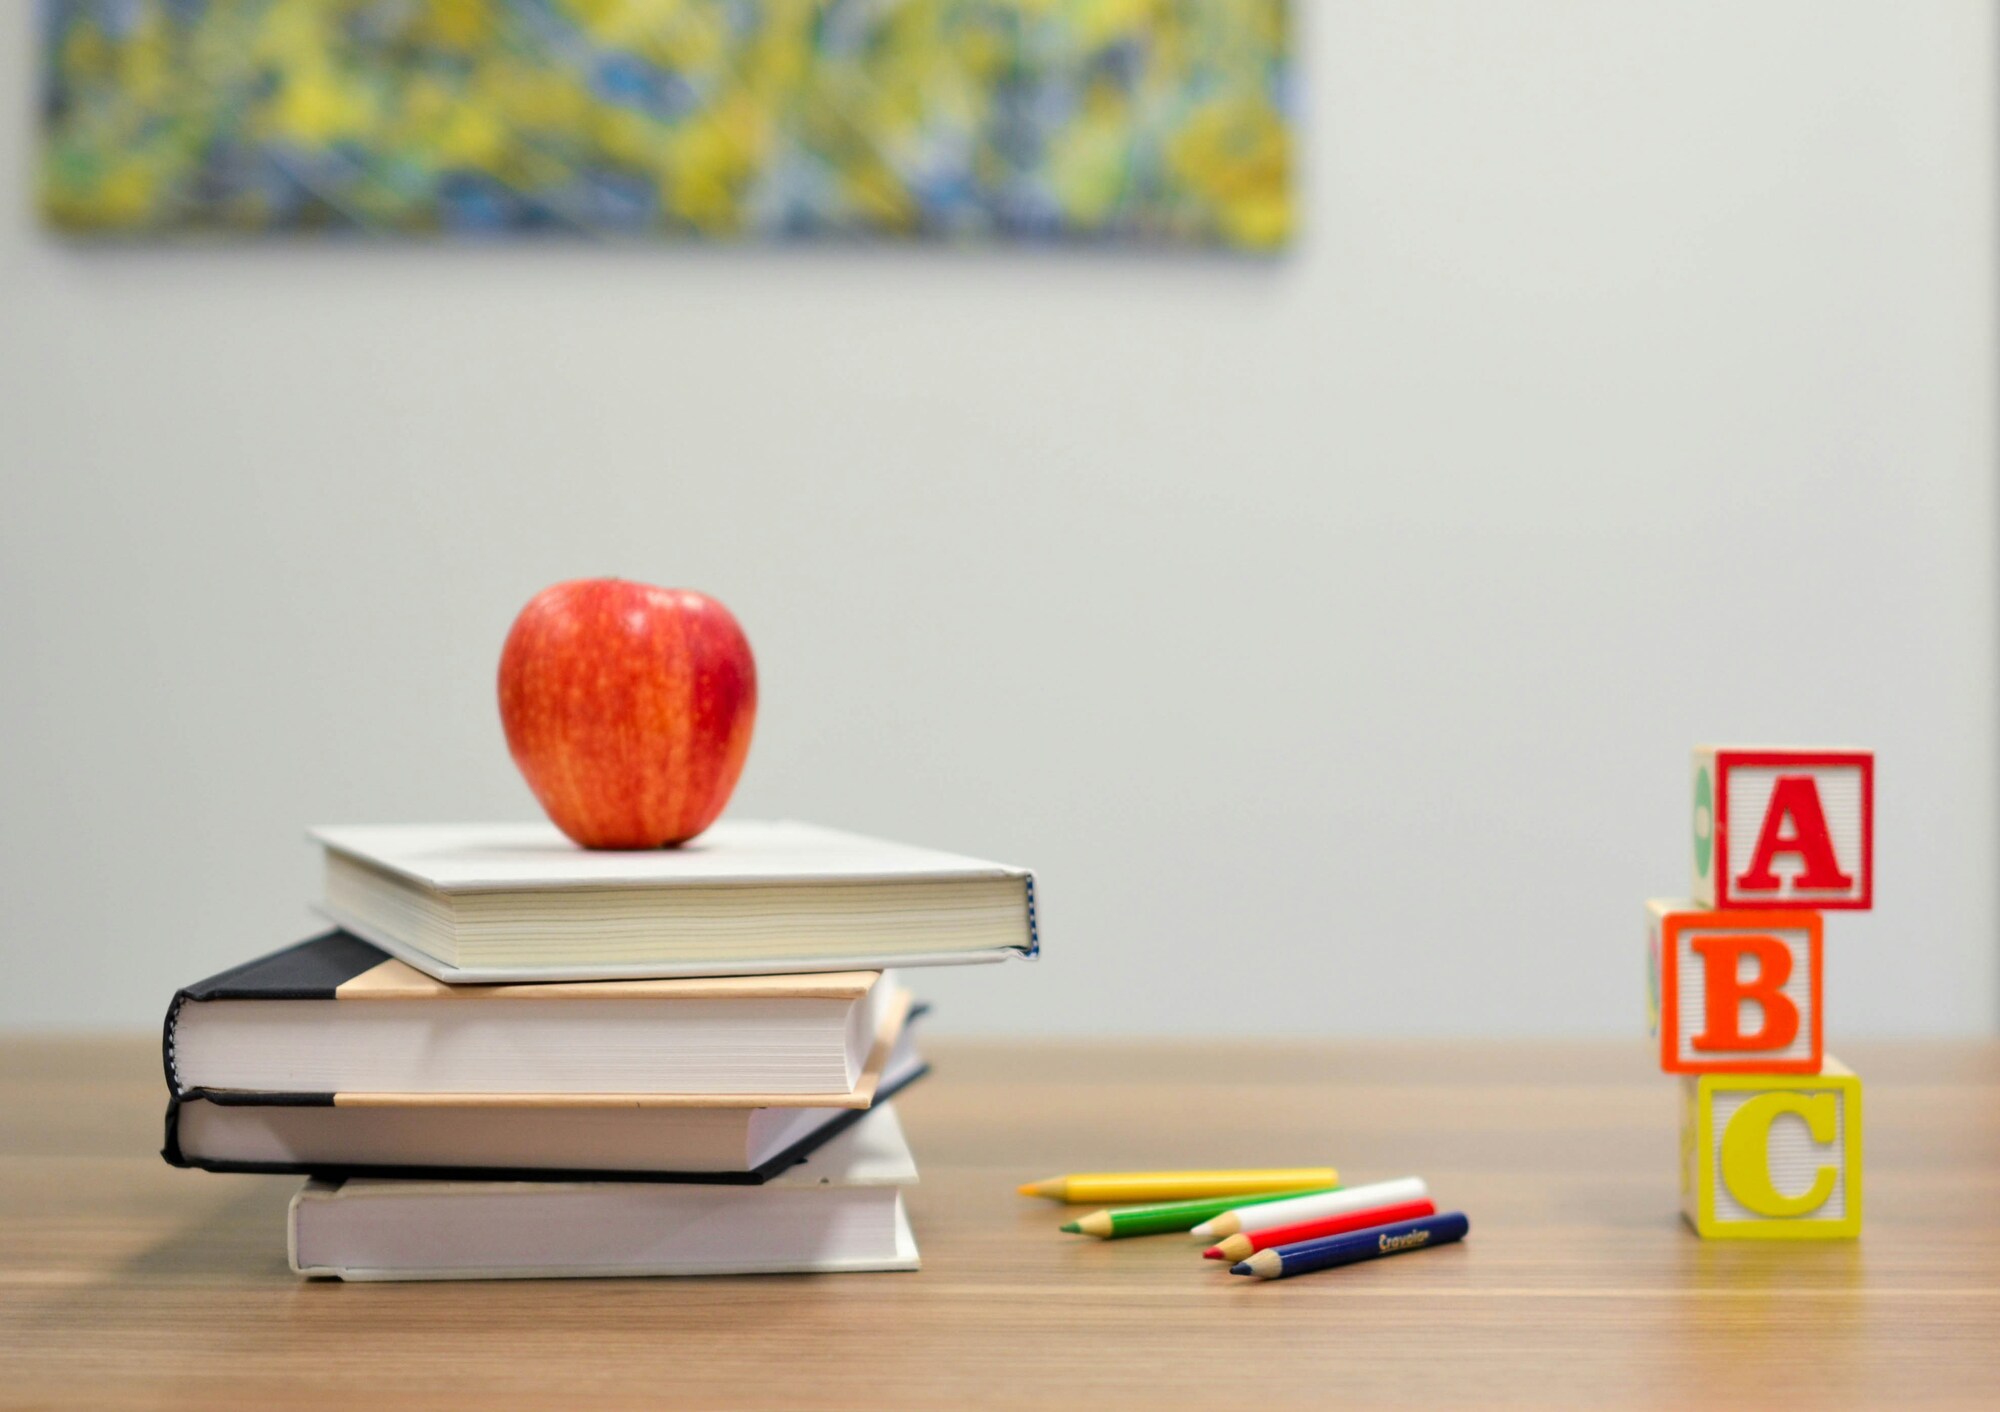 Bücher, Apfel, Stifte und Wasser. Wichtige Dinge für Bildung